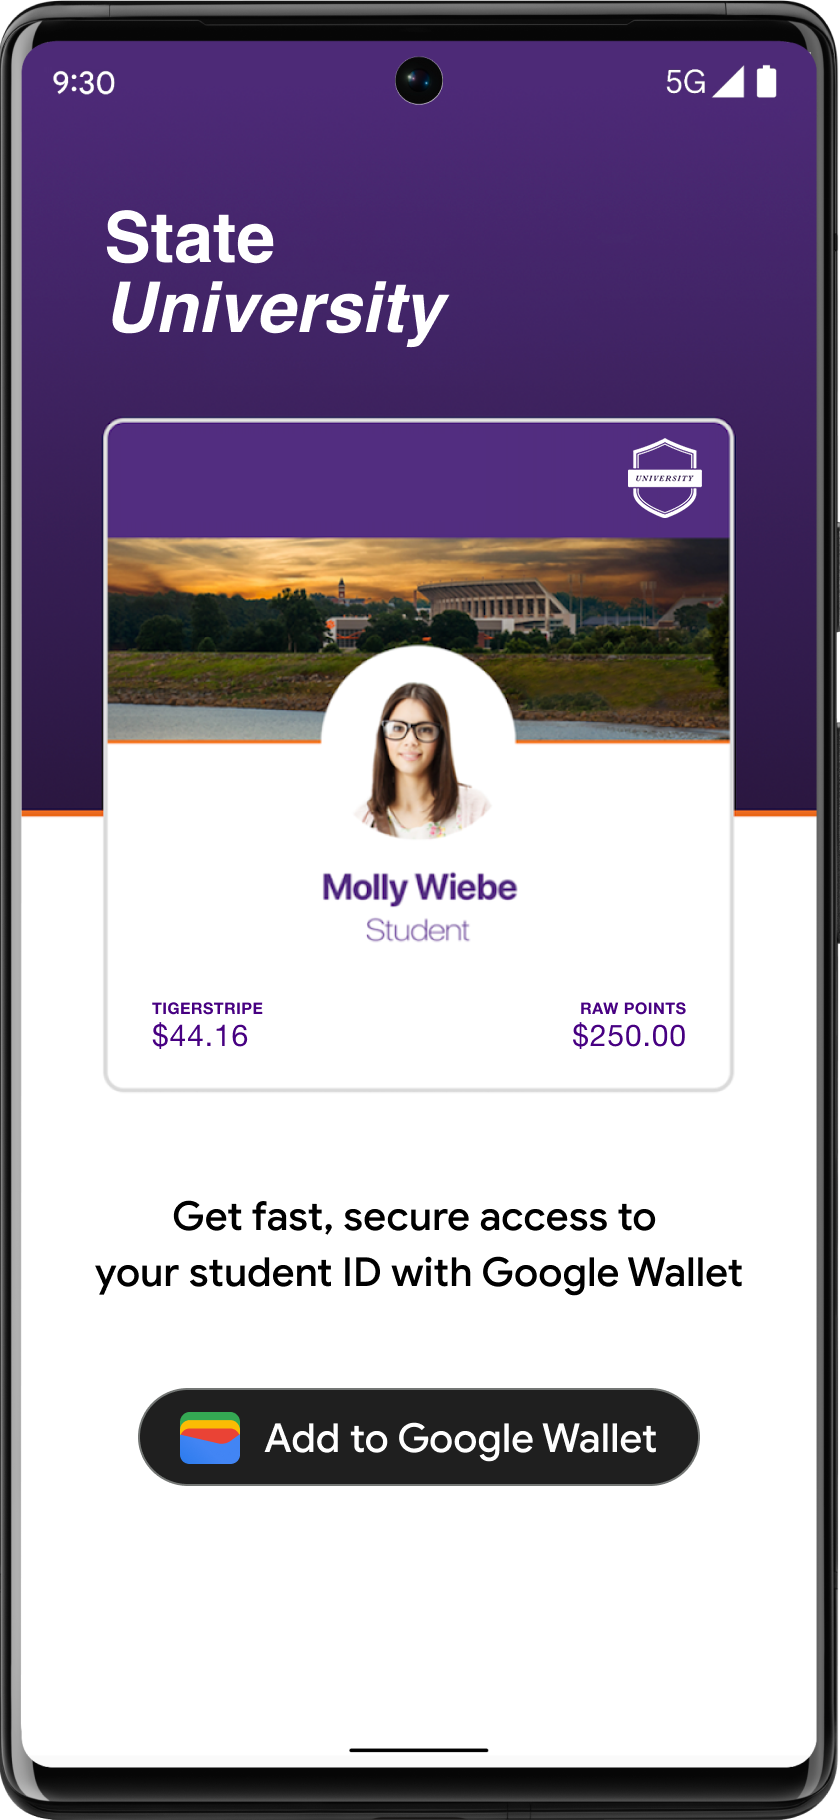 छात्र-छात्रा खाता ऐप्लिकेशन में प्रमुखता से दिखाए जाने वाले &#39;Google Wallet में जोड़ें&#39; बटन
  पर क्लिक किया जाता है.